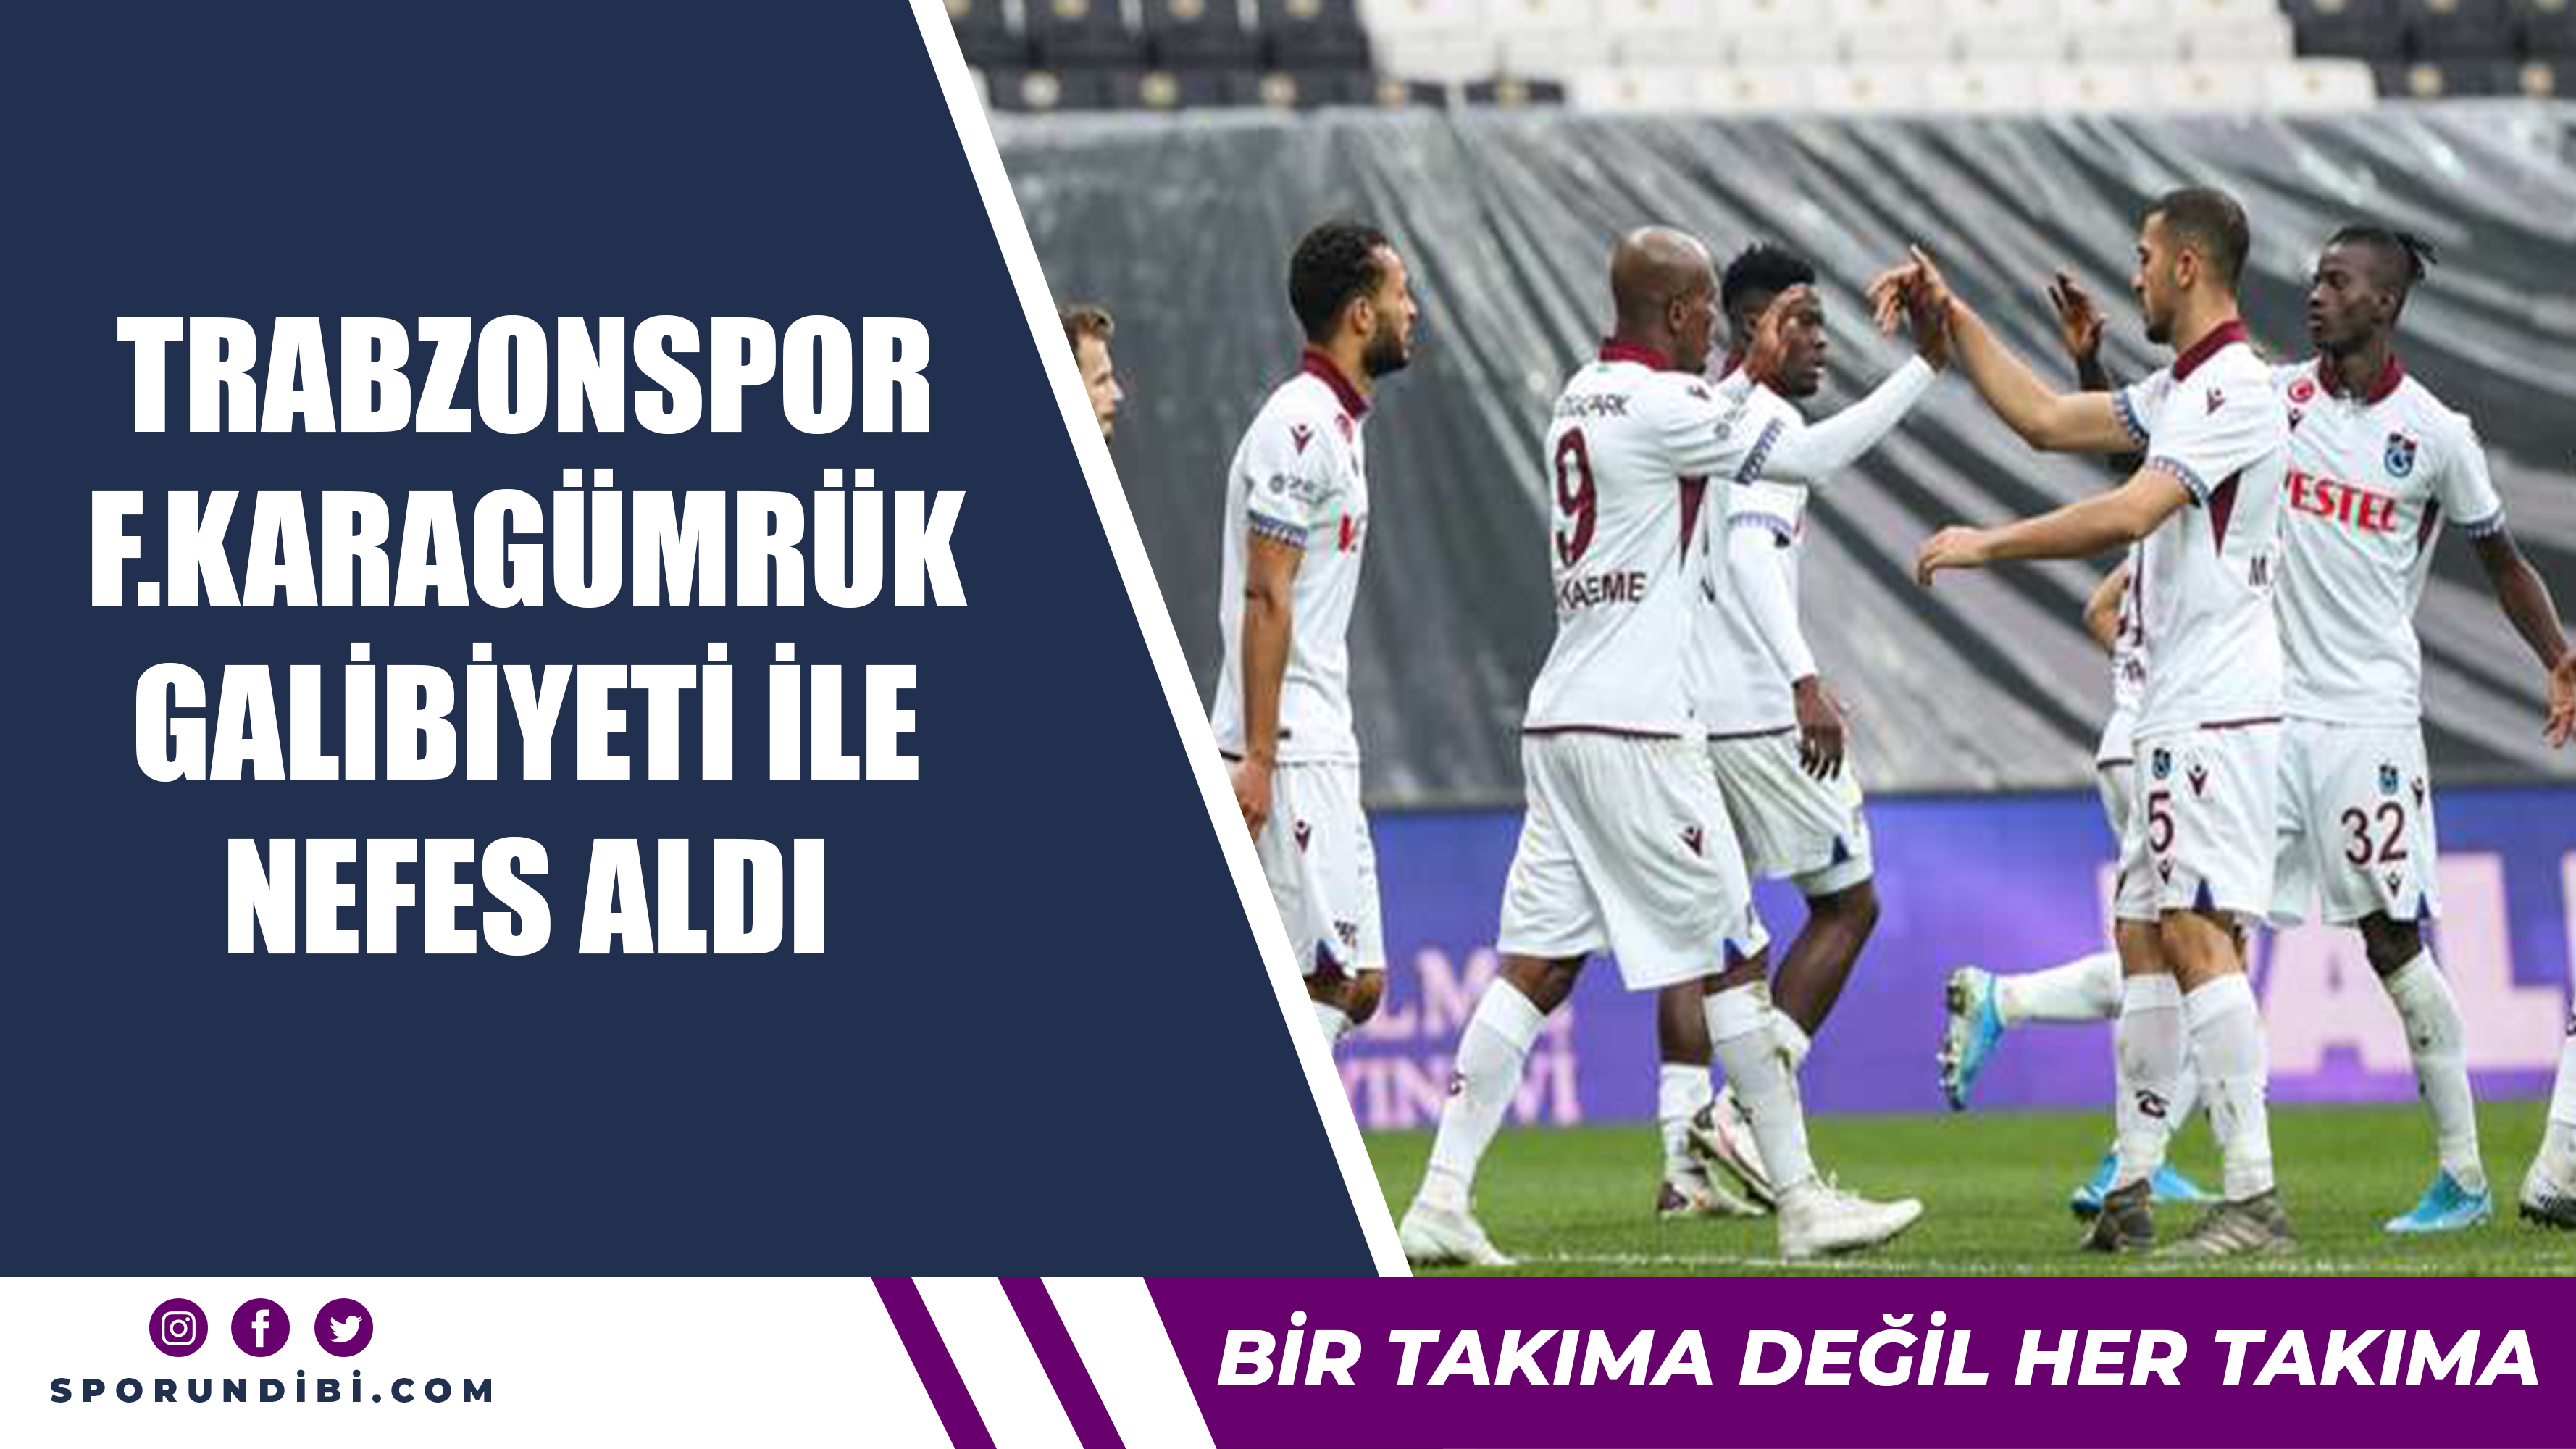 Trabzonspor, Karagümrük galibiyetiyle nefes aldı...